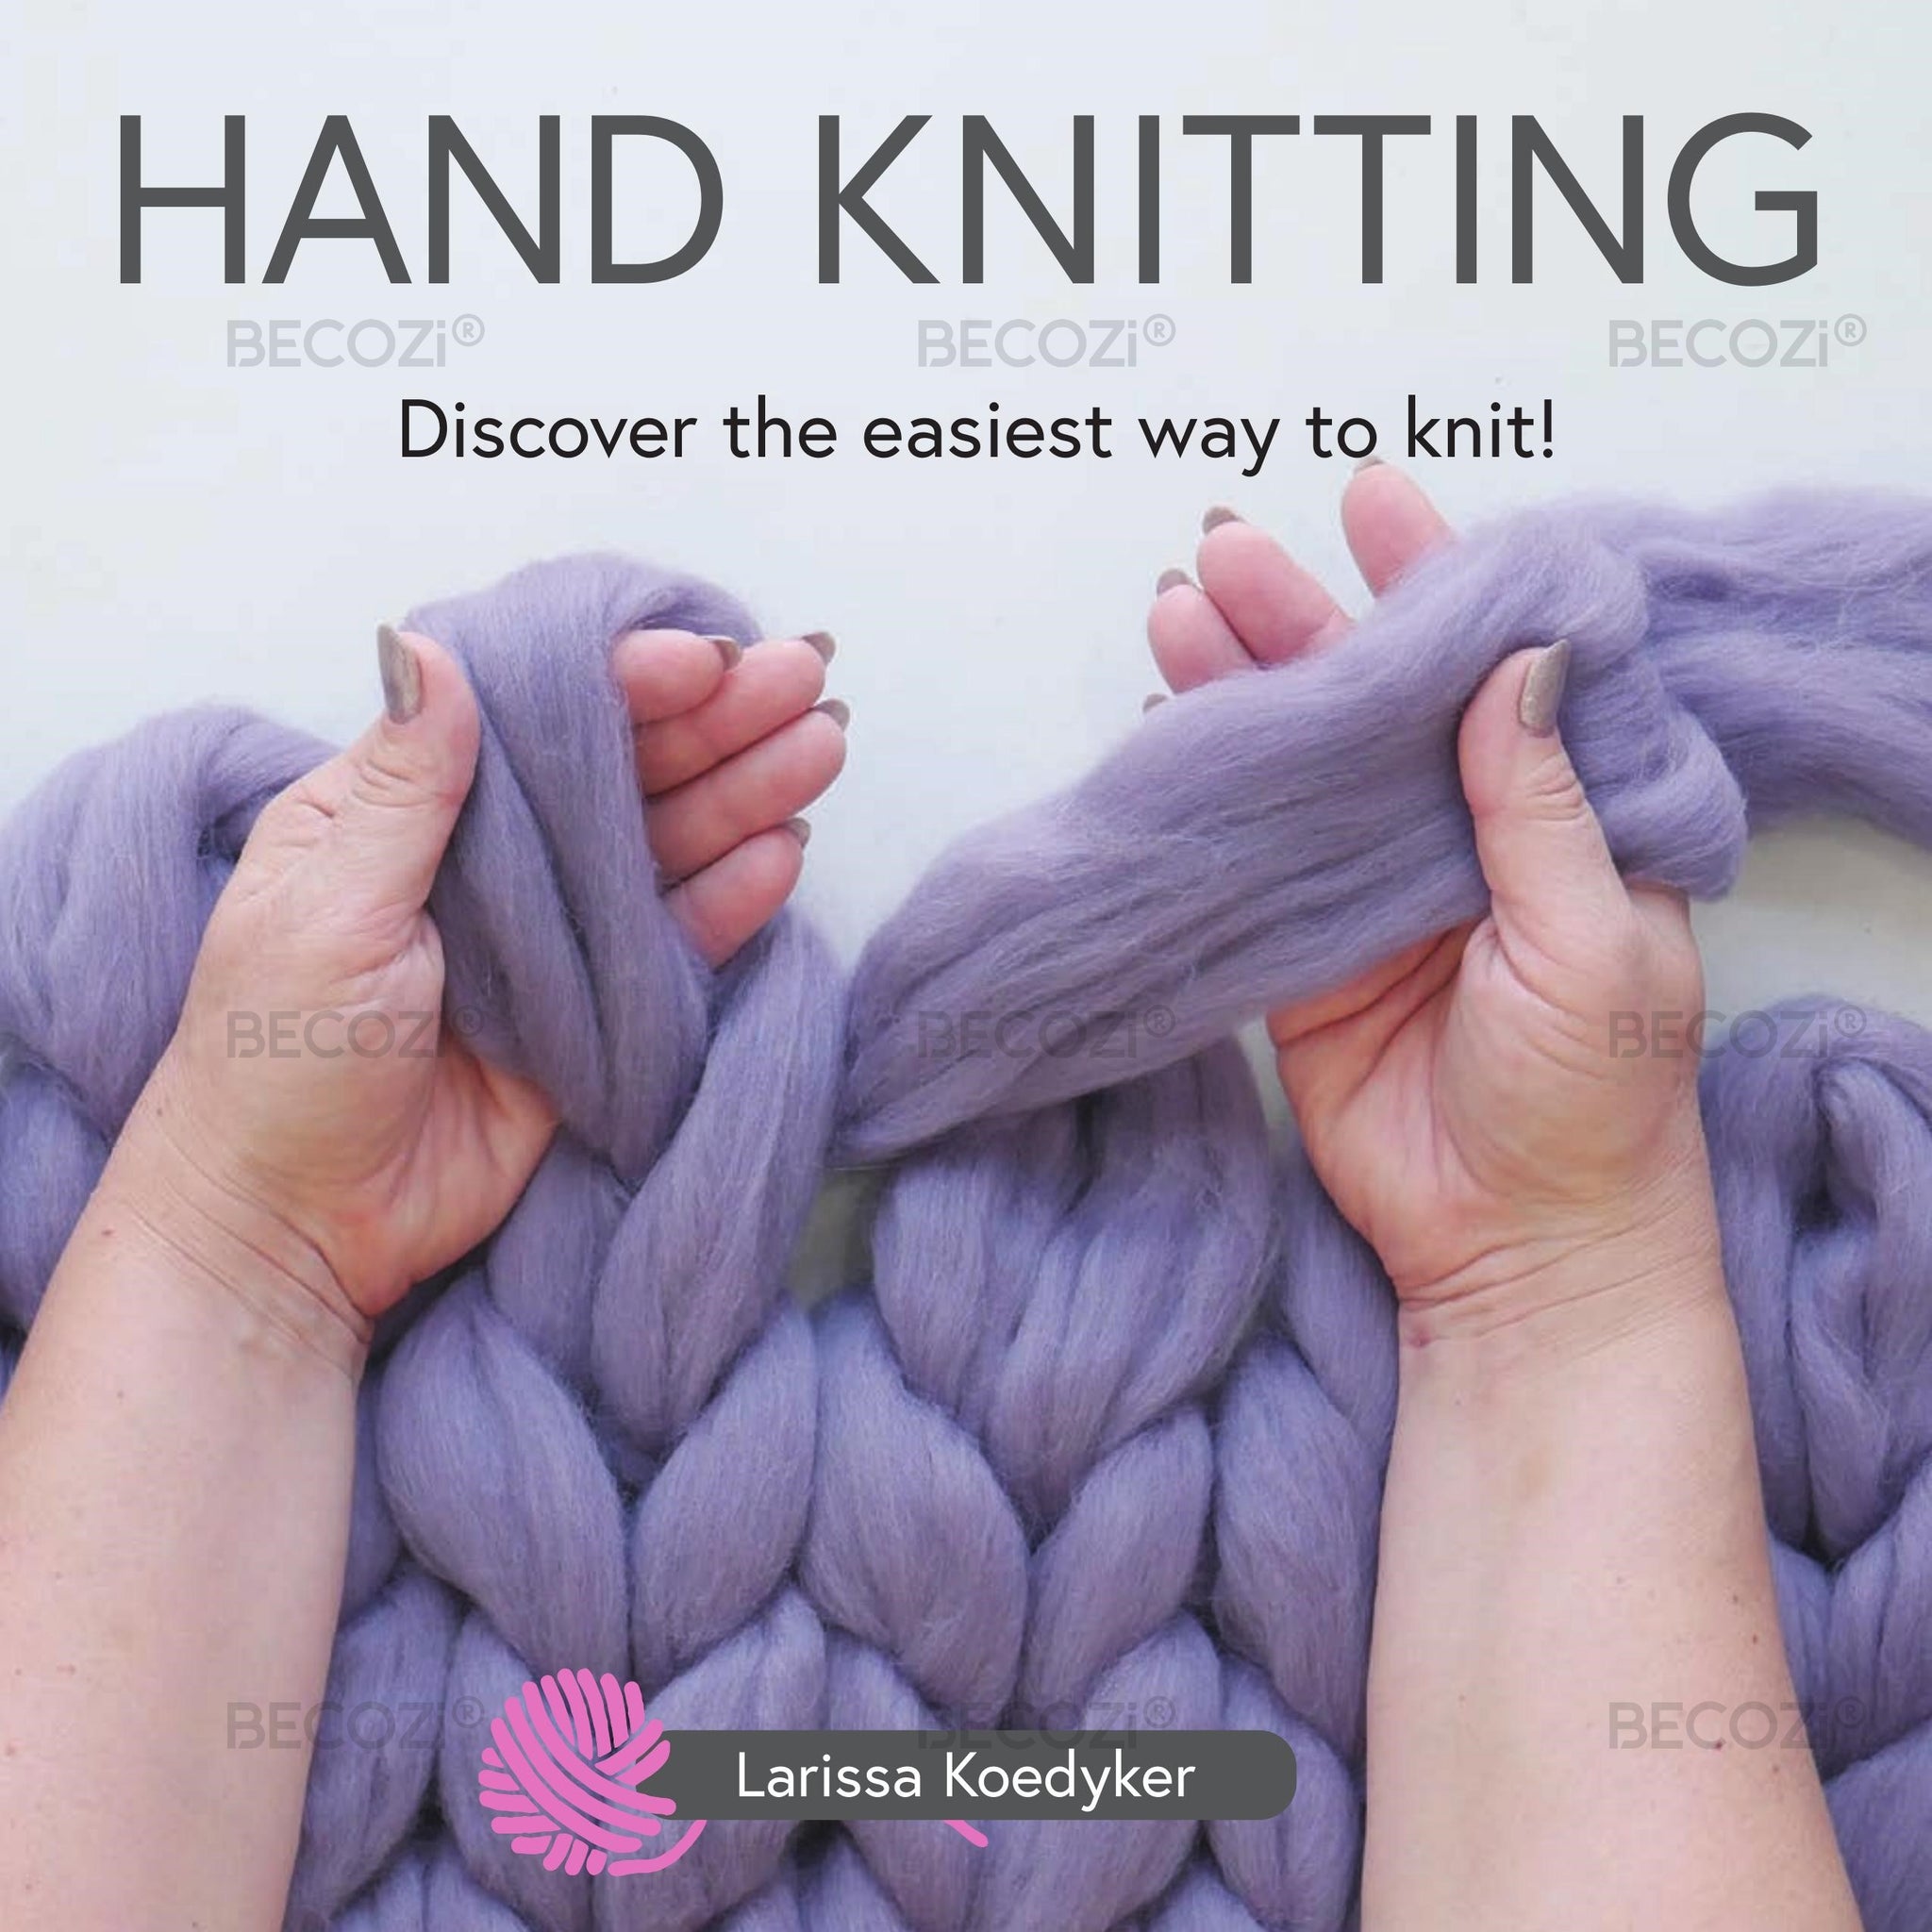 Smart Knitting Book, Knitting Technique, Knitting Blanket